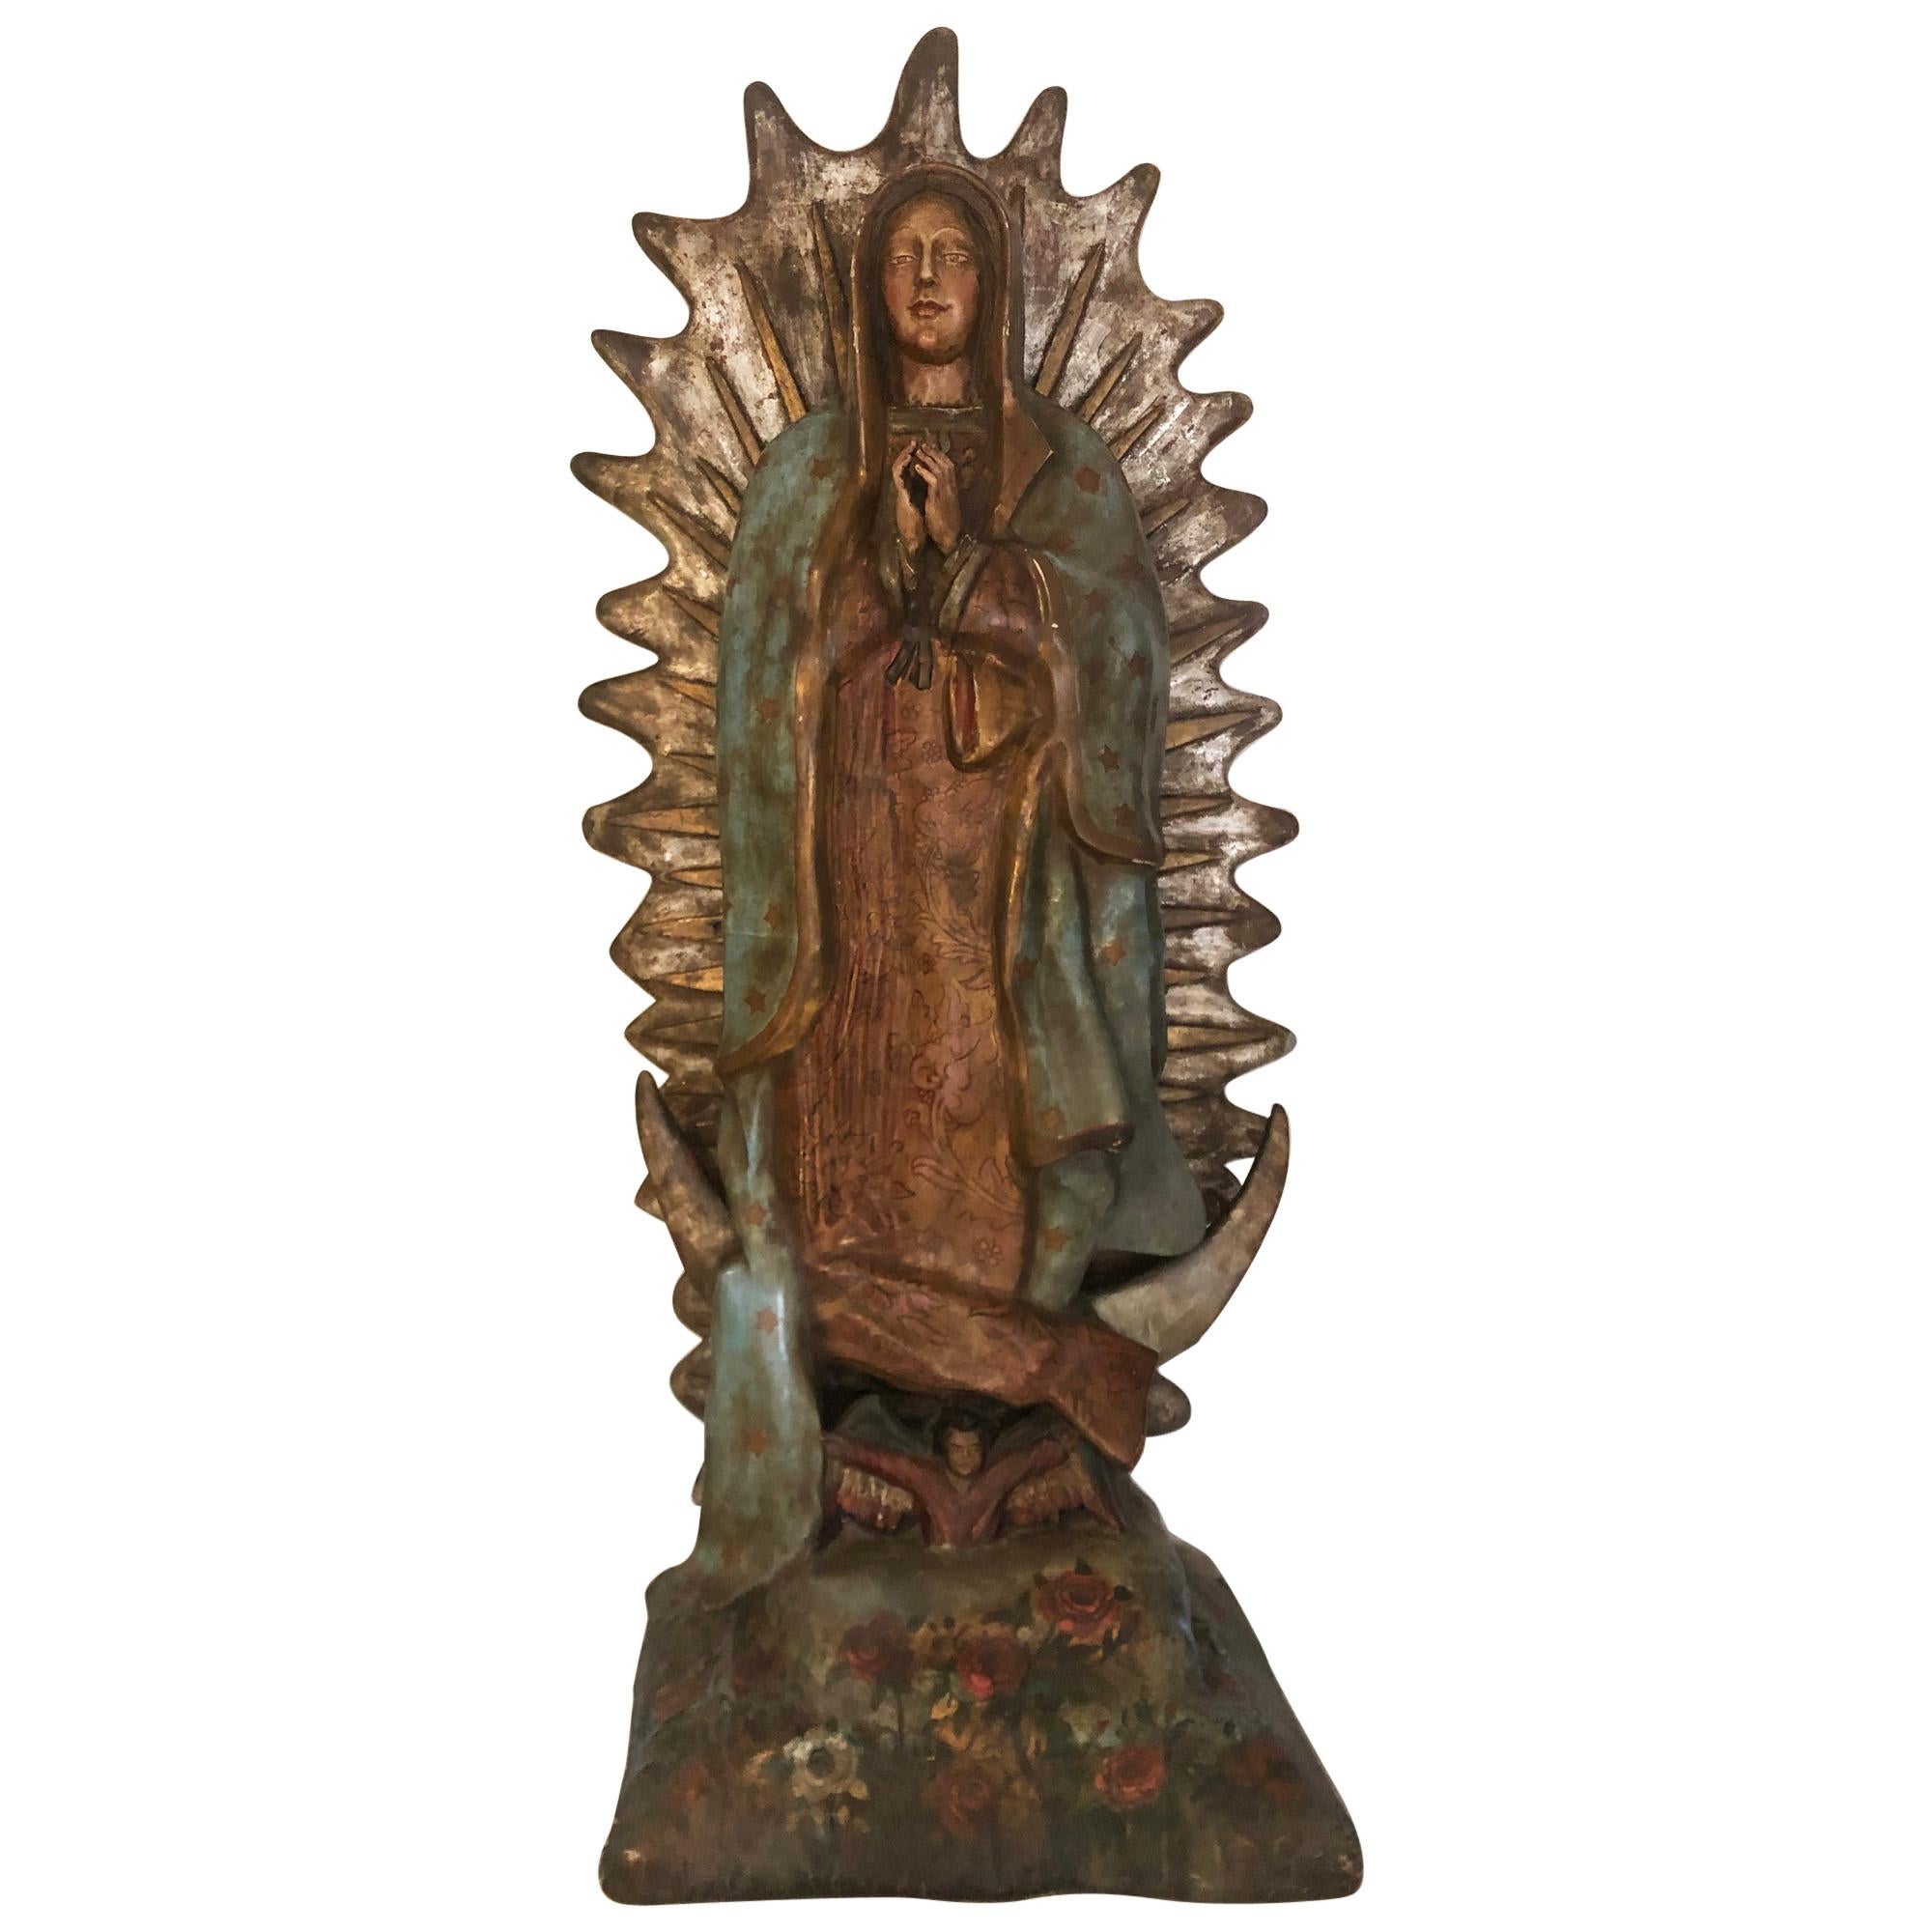 Kornstahl-Paste-Skulptur unserer Dame von Guadalupe, gefunden in Mexiko, um 1900